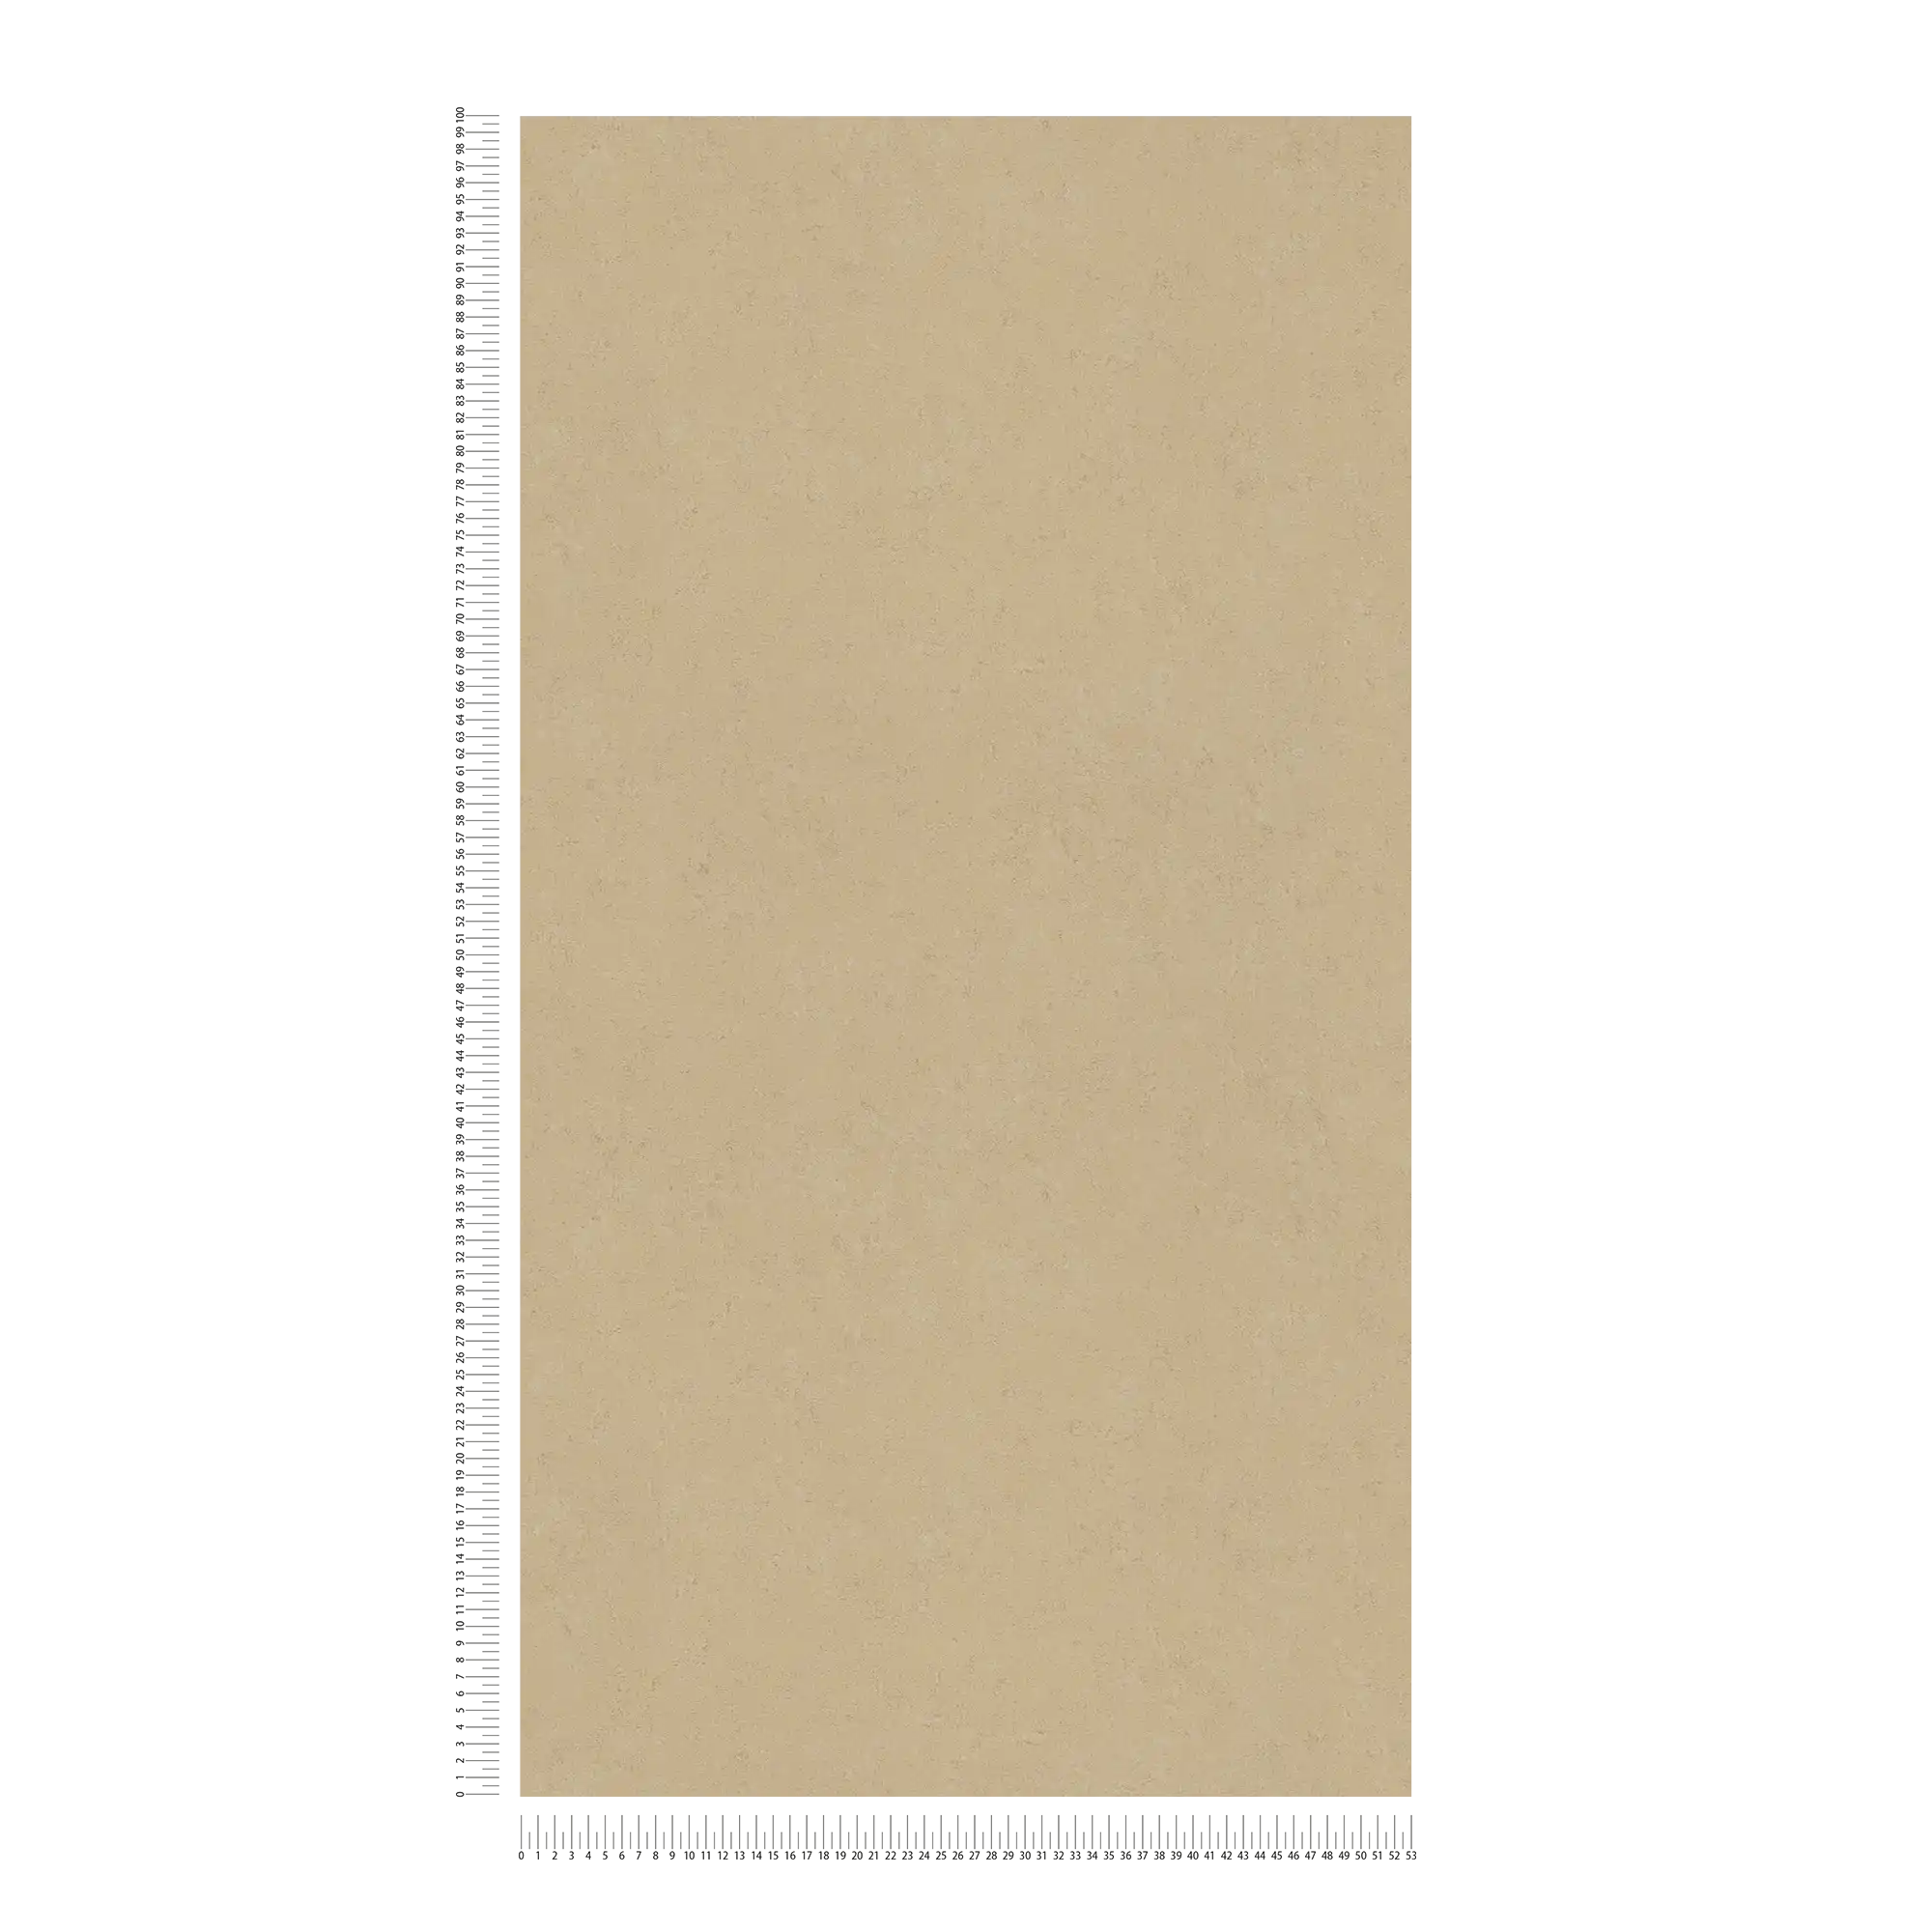             Papier peint uni beige avec motif structuré
        